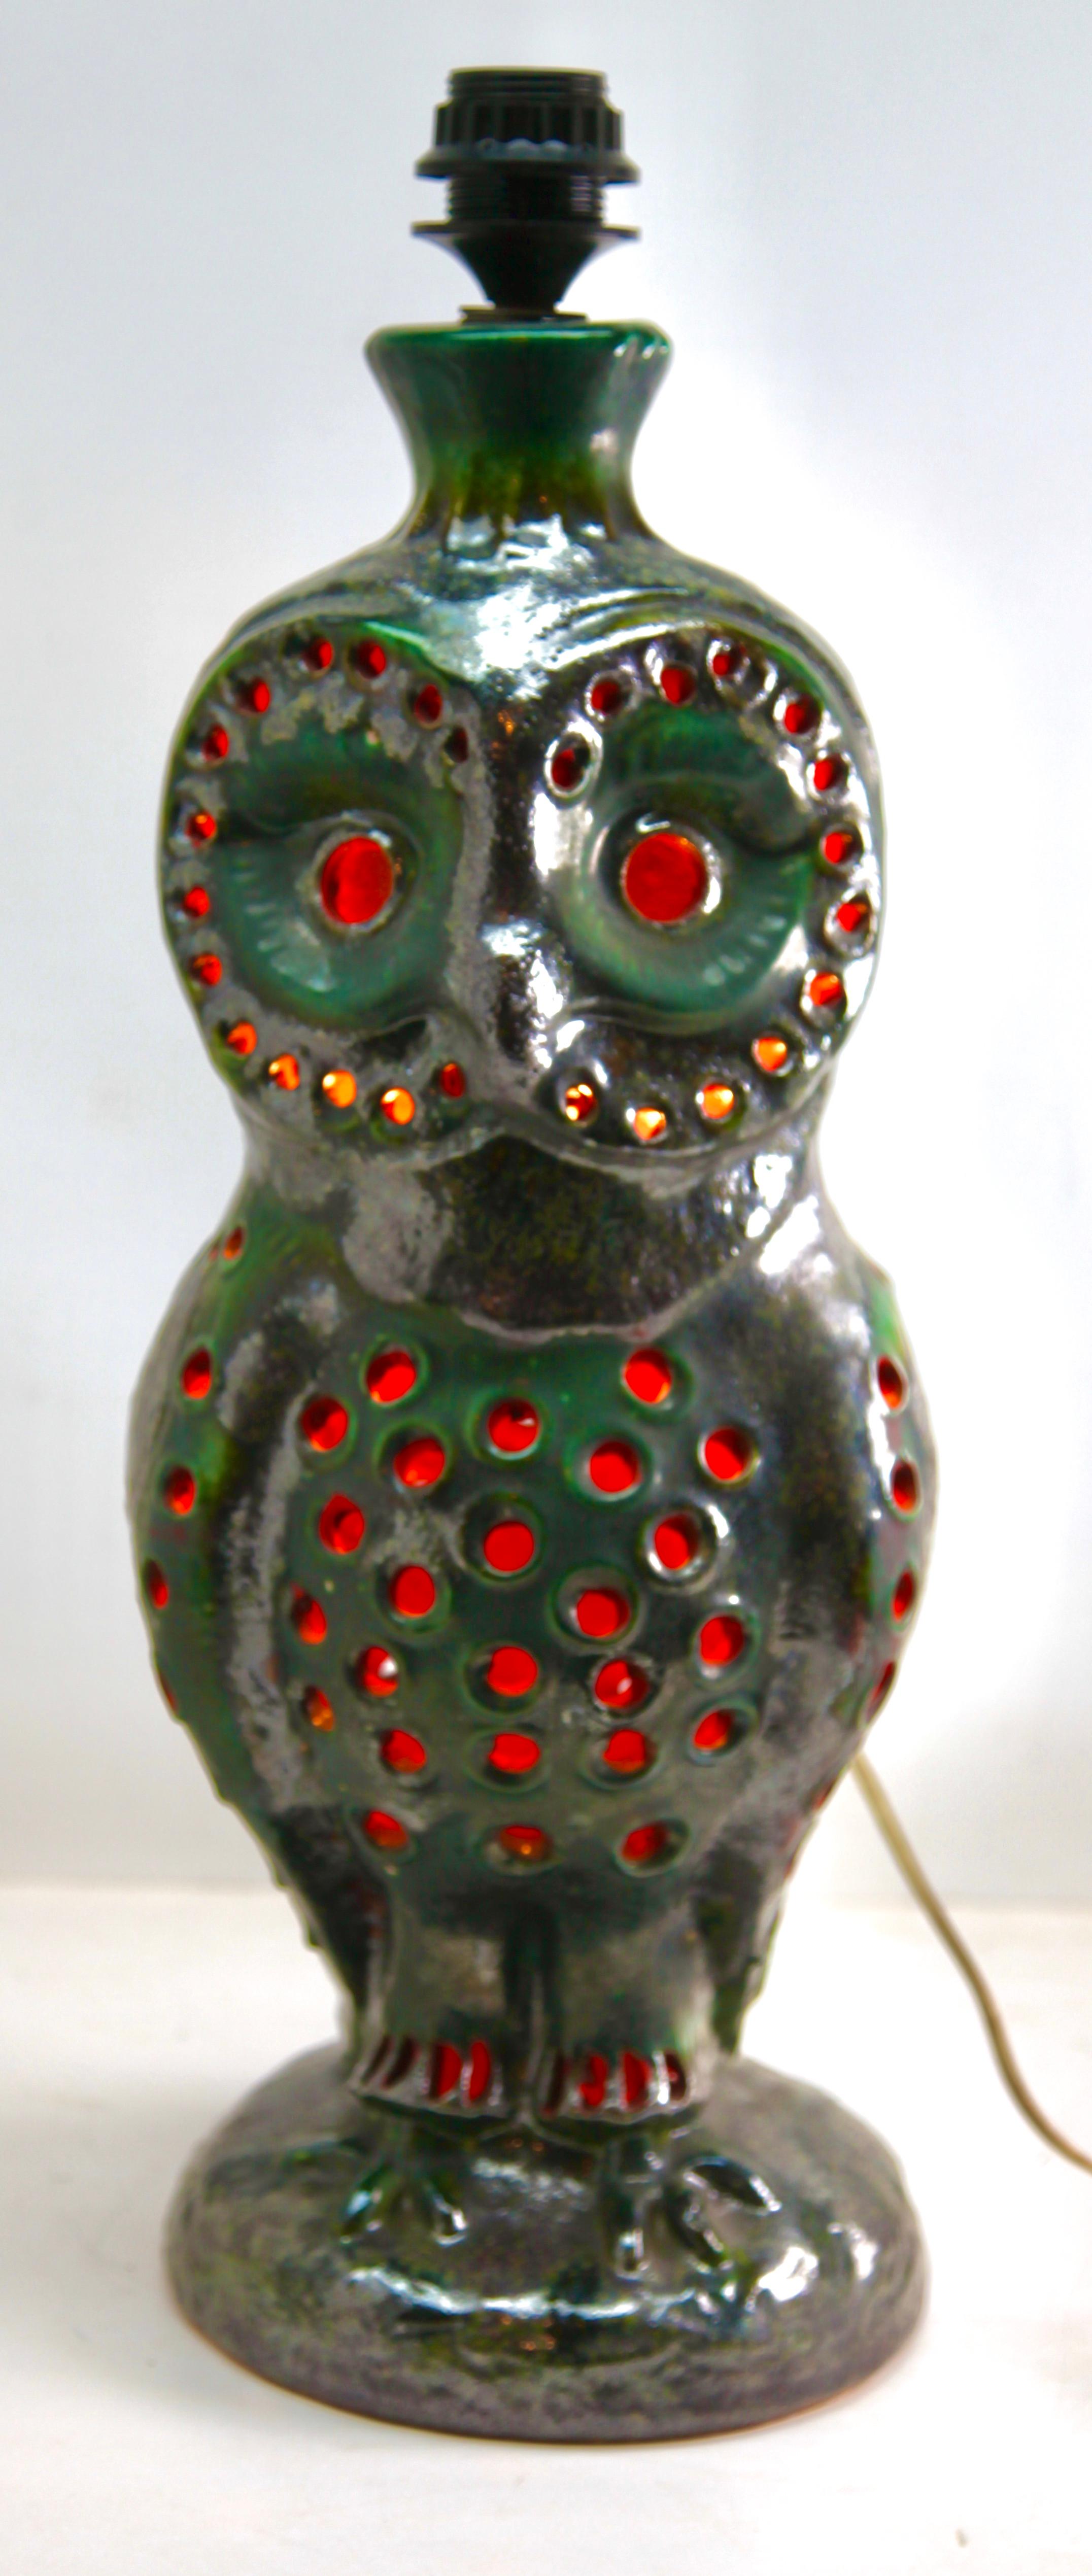 Lampadaire dramatique Fat lava Owl en émaux vert et orange sur un fond de grès neutre, 
Deux lampes en une, avec une lampe standard sur le dessus et une lampe intérieure supplémentaire. 
Conçu et réalisé par Walter Gerhards.
La lampe intérieure